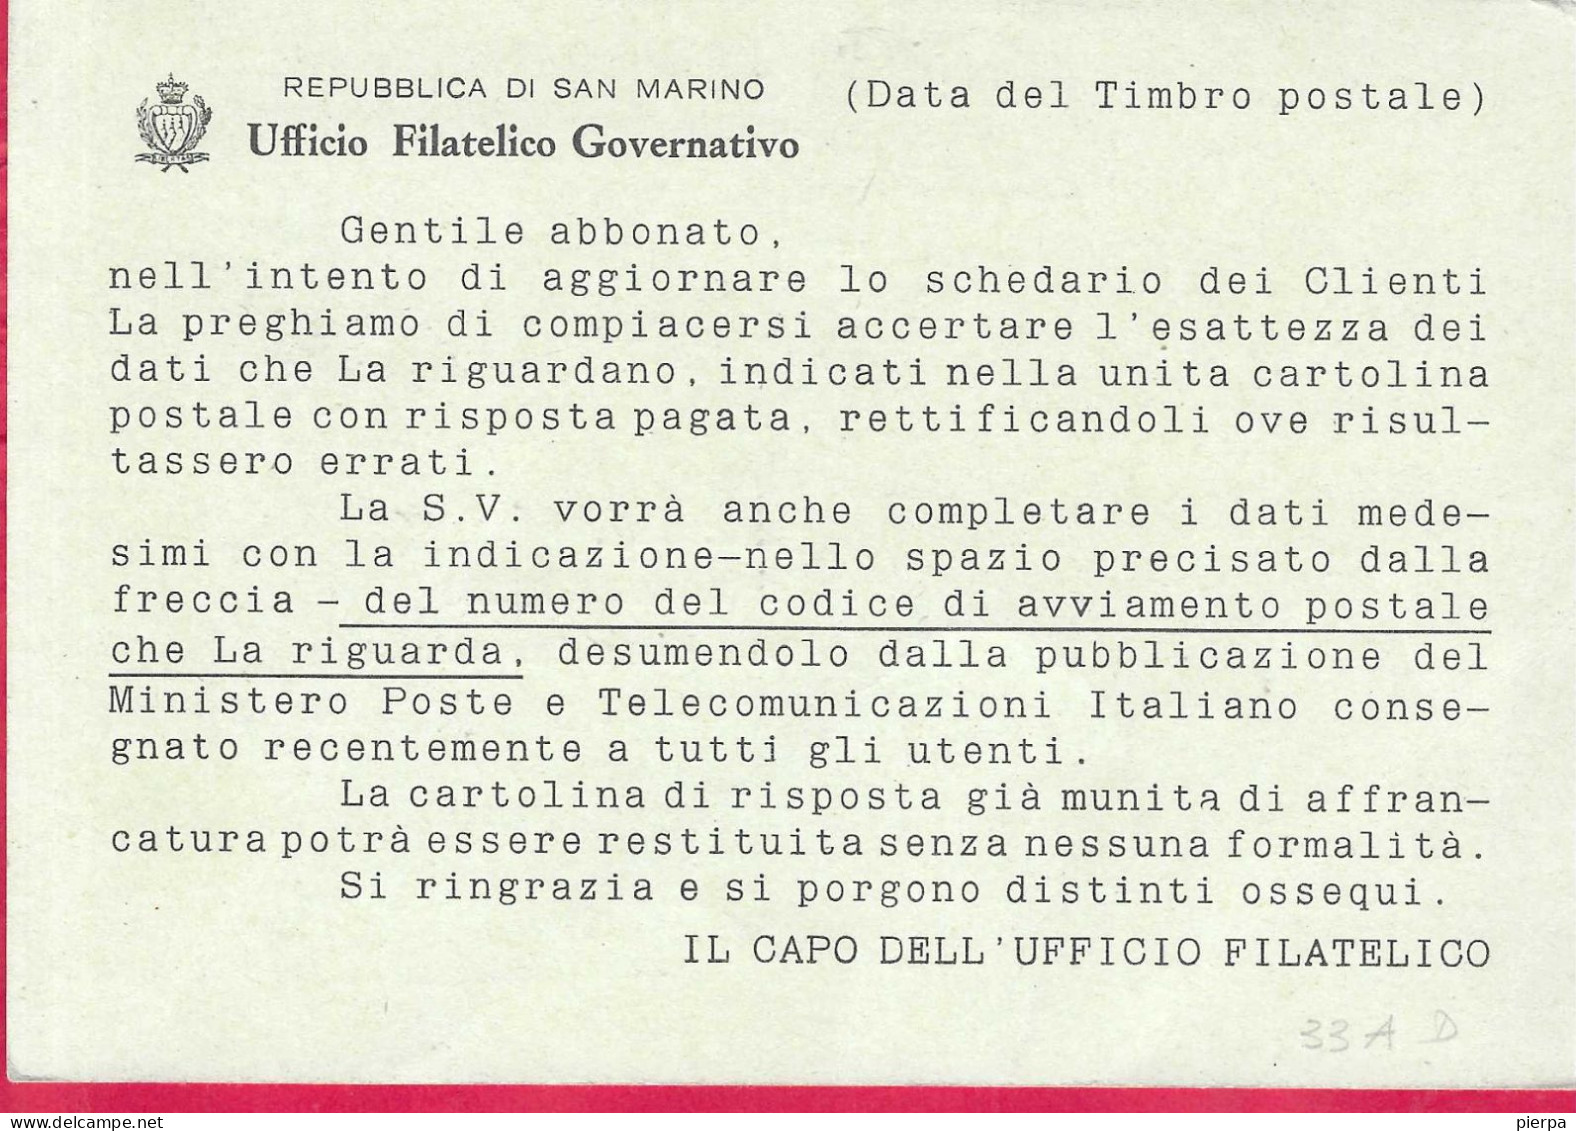 SAN MARINO - INTERO CARTOLINA POSTALE PALAZZO CONSIGLIARE LIRE 30 NUMERATA DOMANDA(INT. 32A) - VIAGGIATA*20.7.67* - Postal Stationery